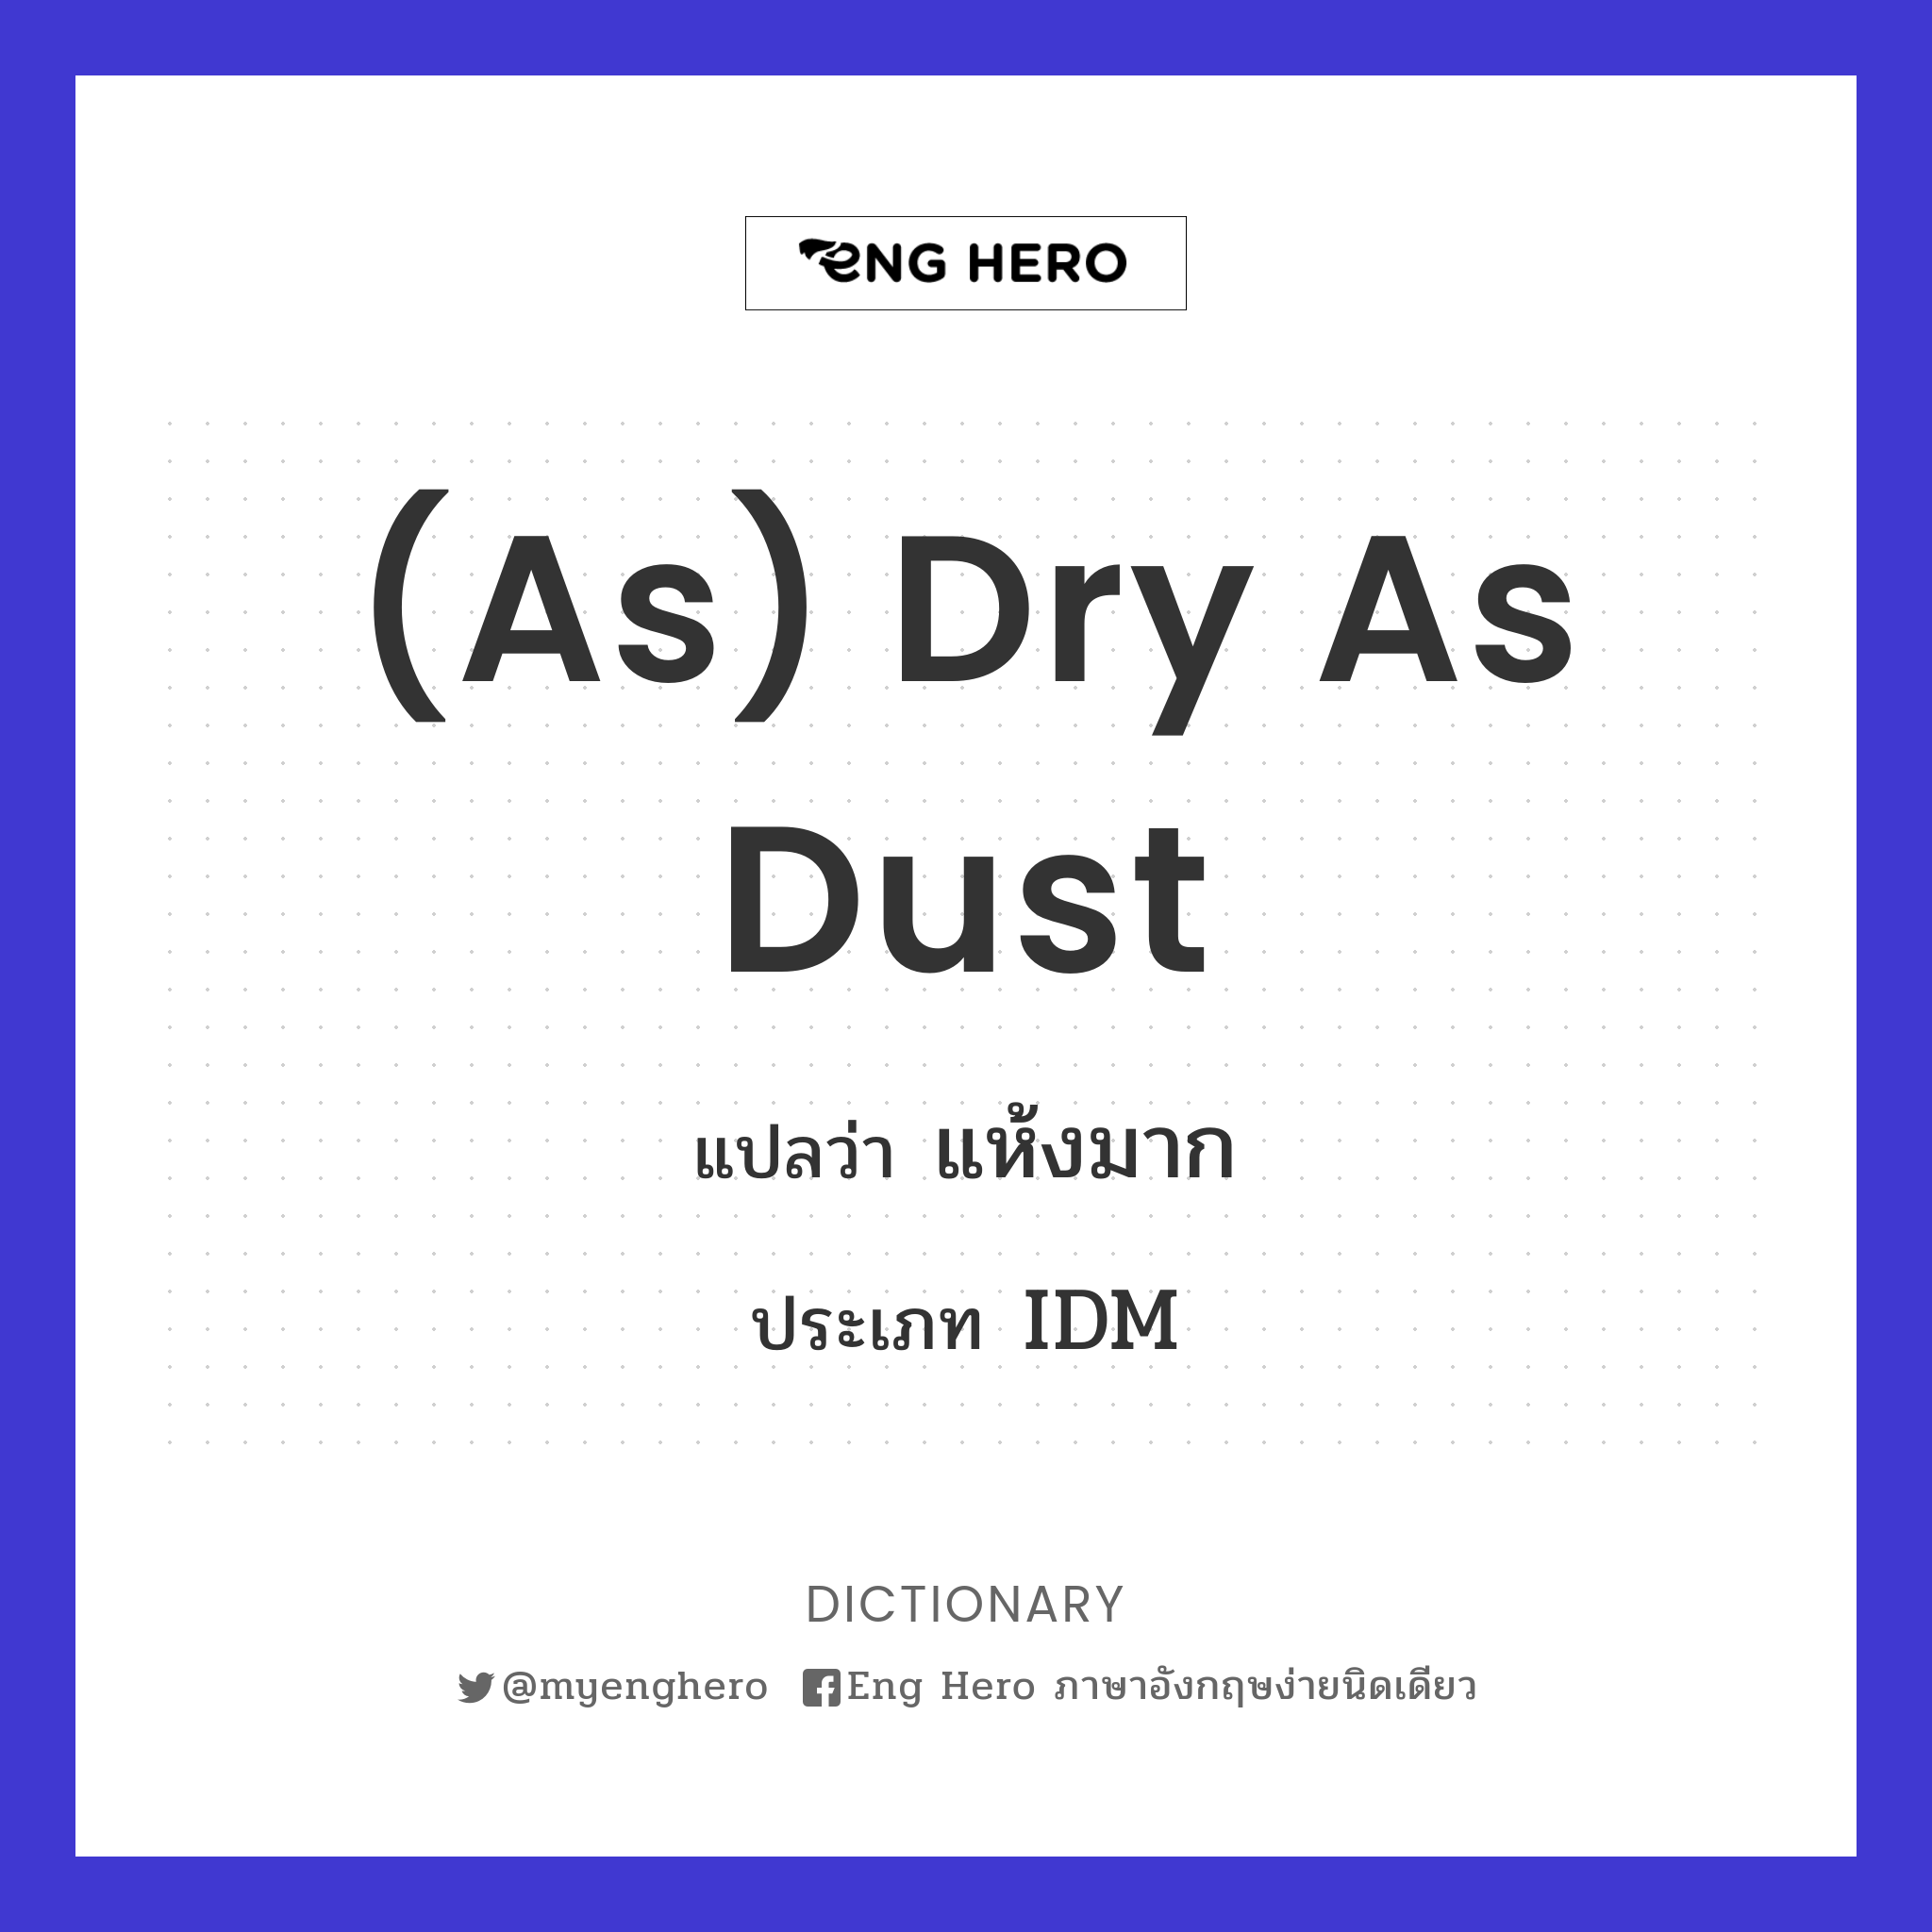 (as) dry as dust